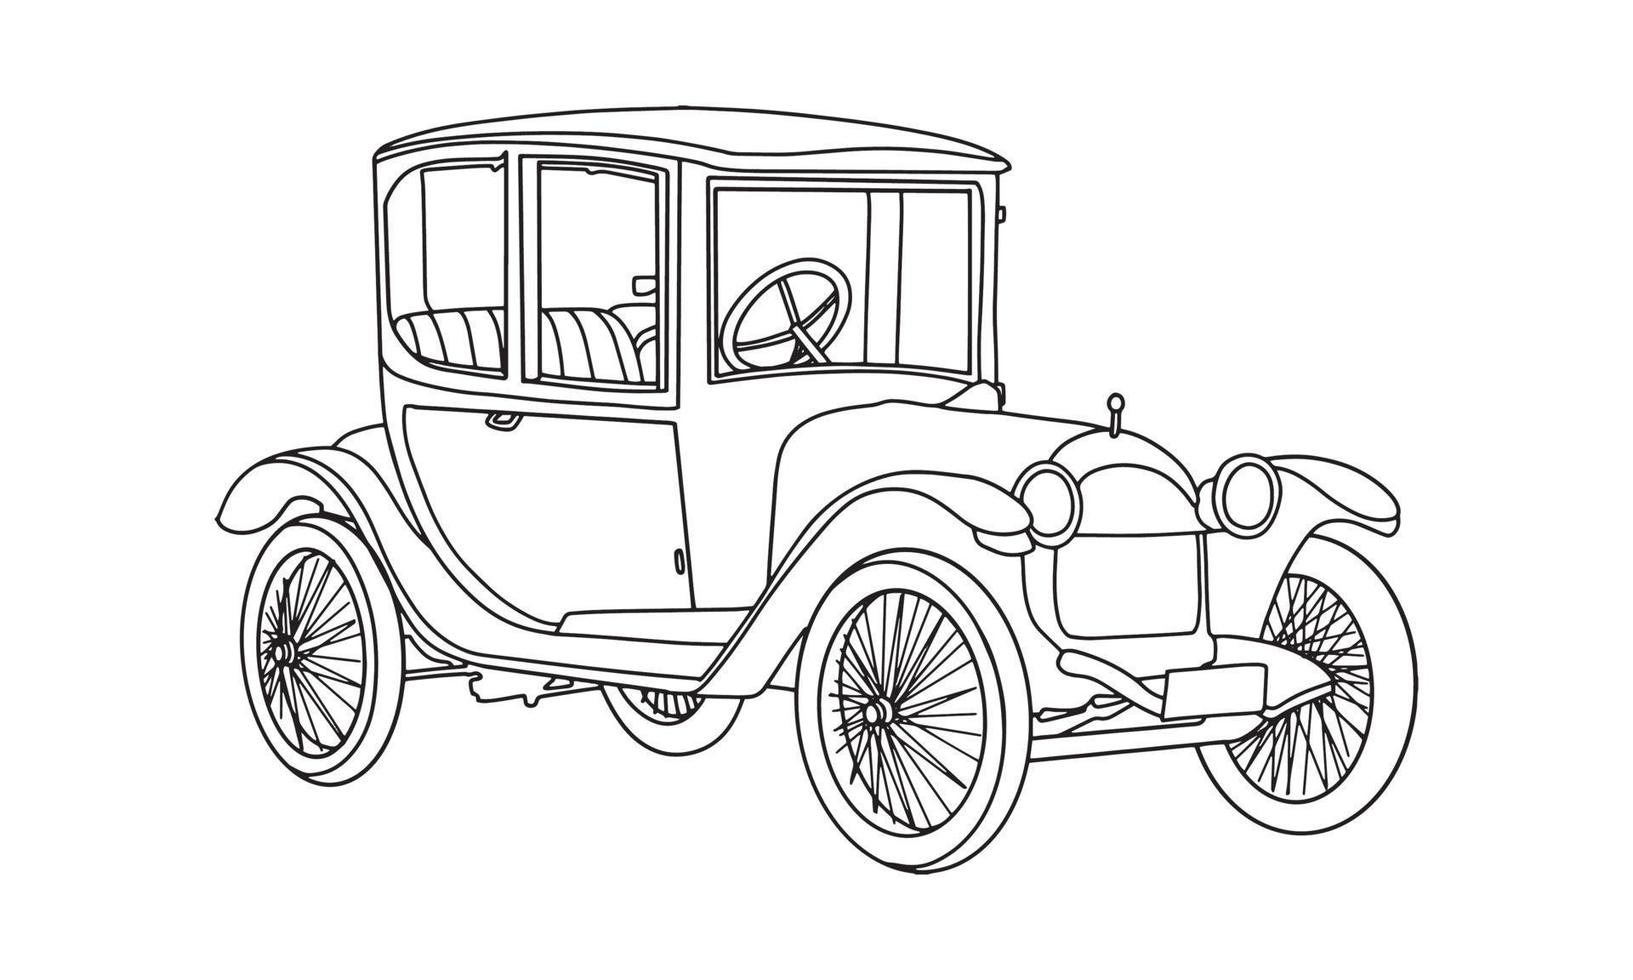 Antique old vintage car line art sketch illustration vector